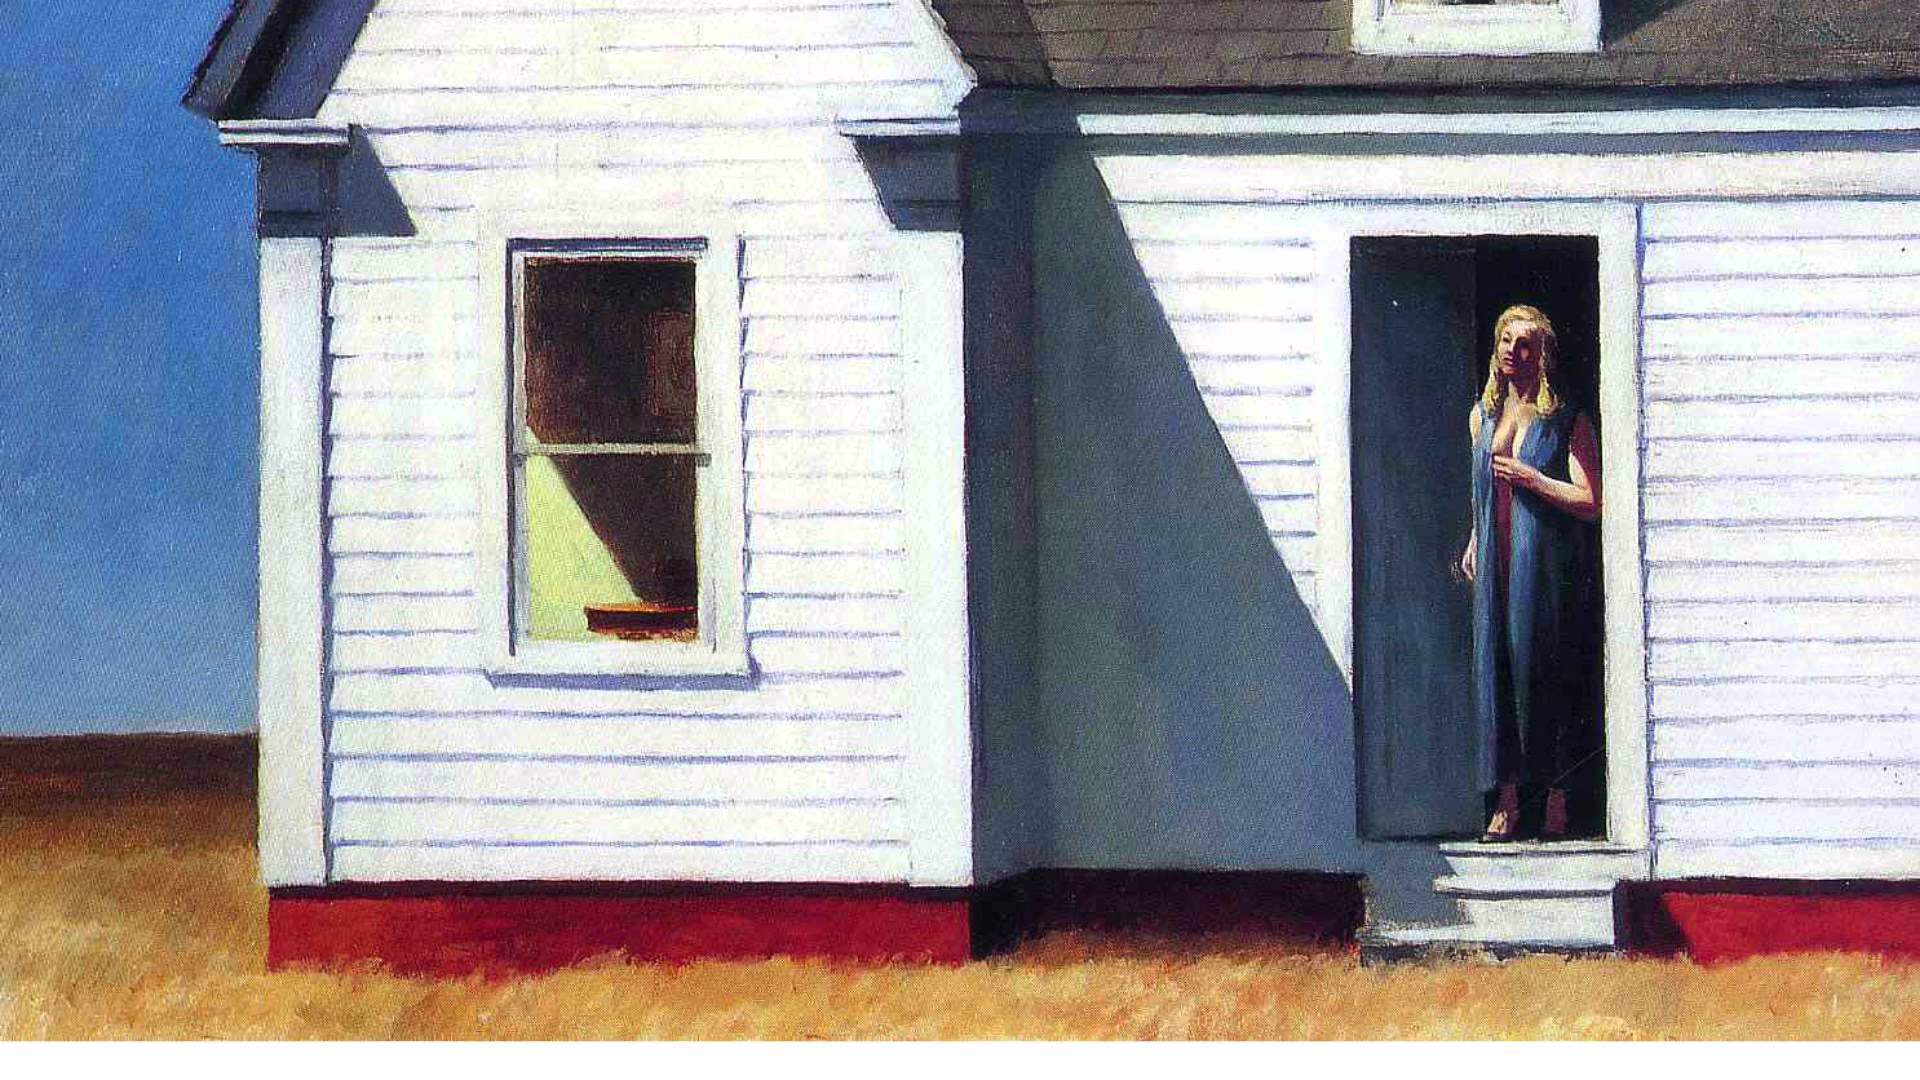 Edward Hopper painting story